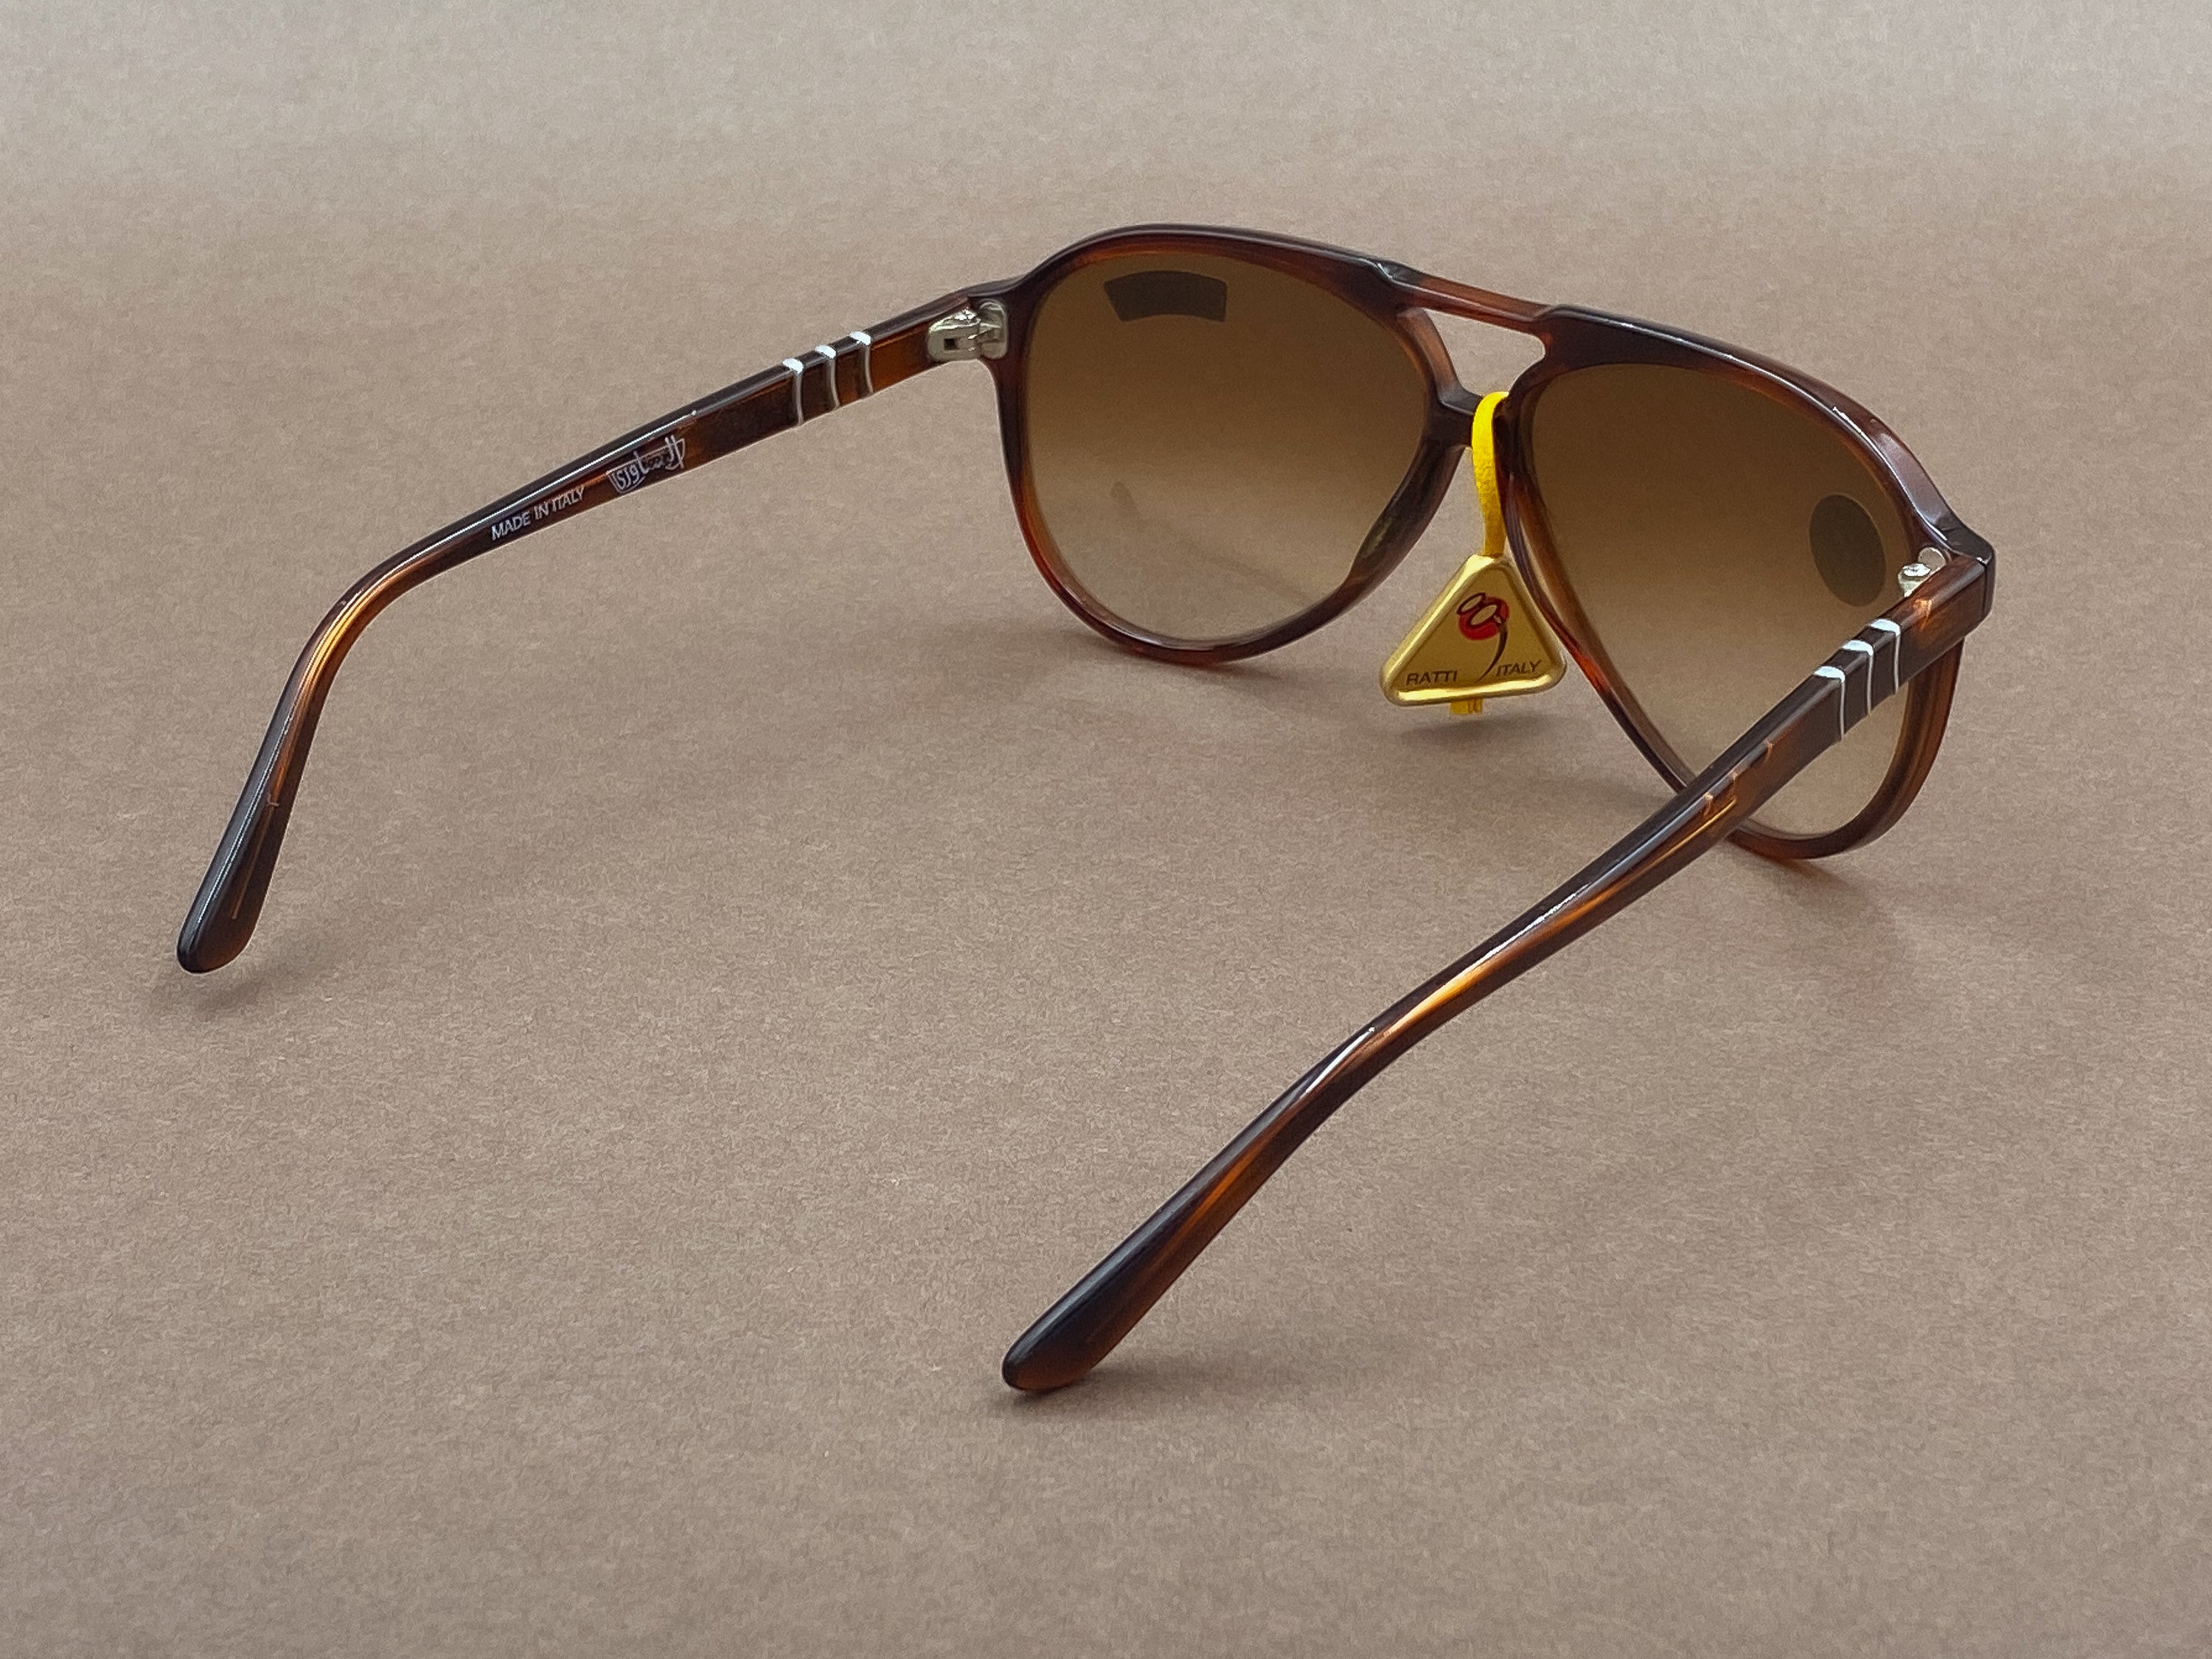 Persol Ratti 58202/56T sunglasses